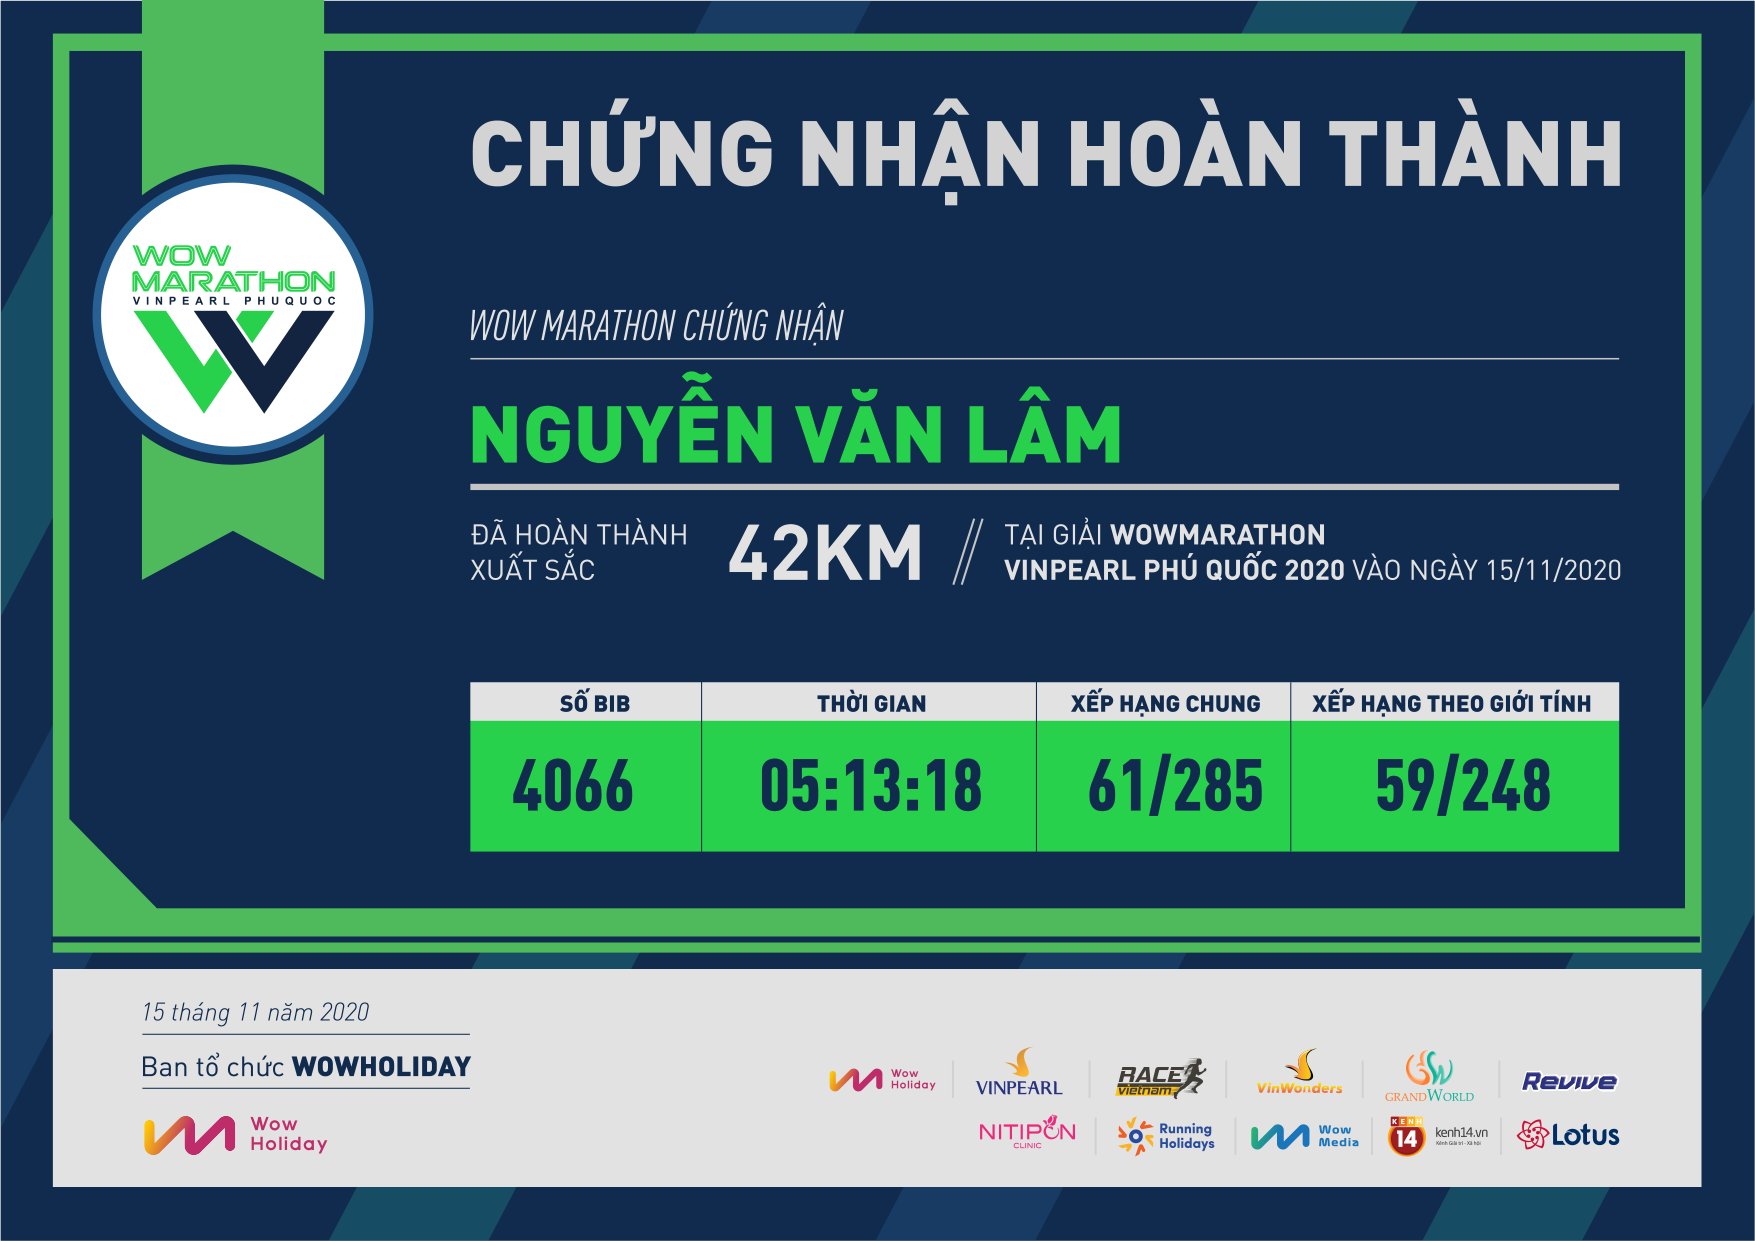 4066 - Nguyễn Văn Lâm